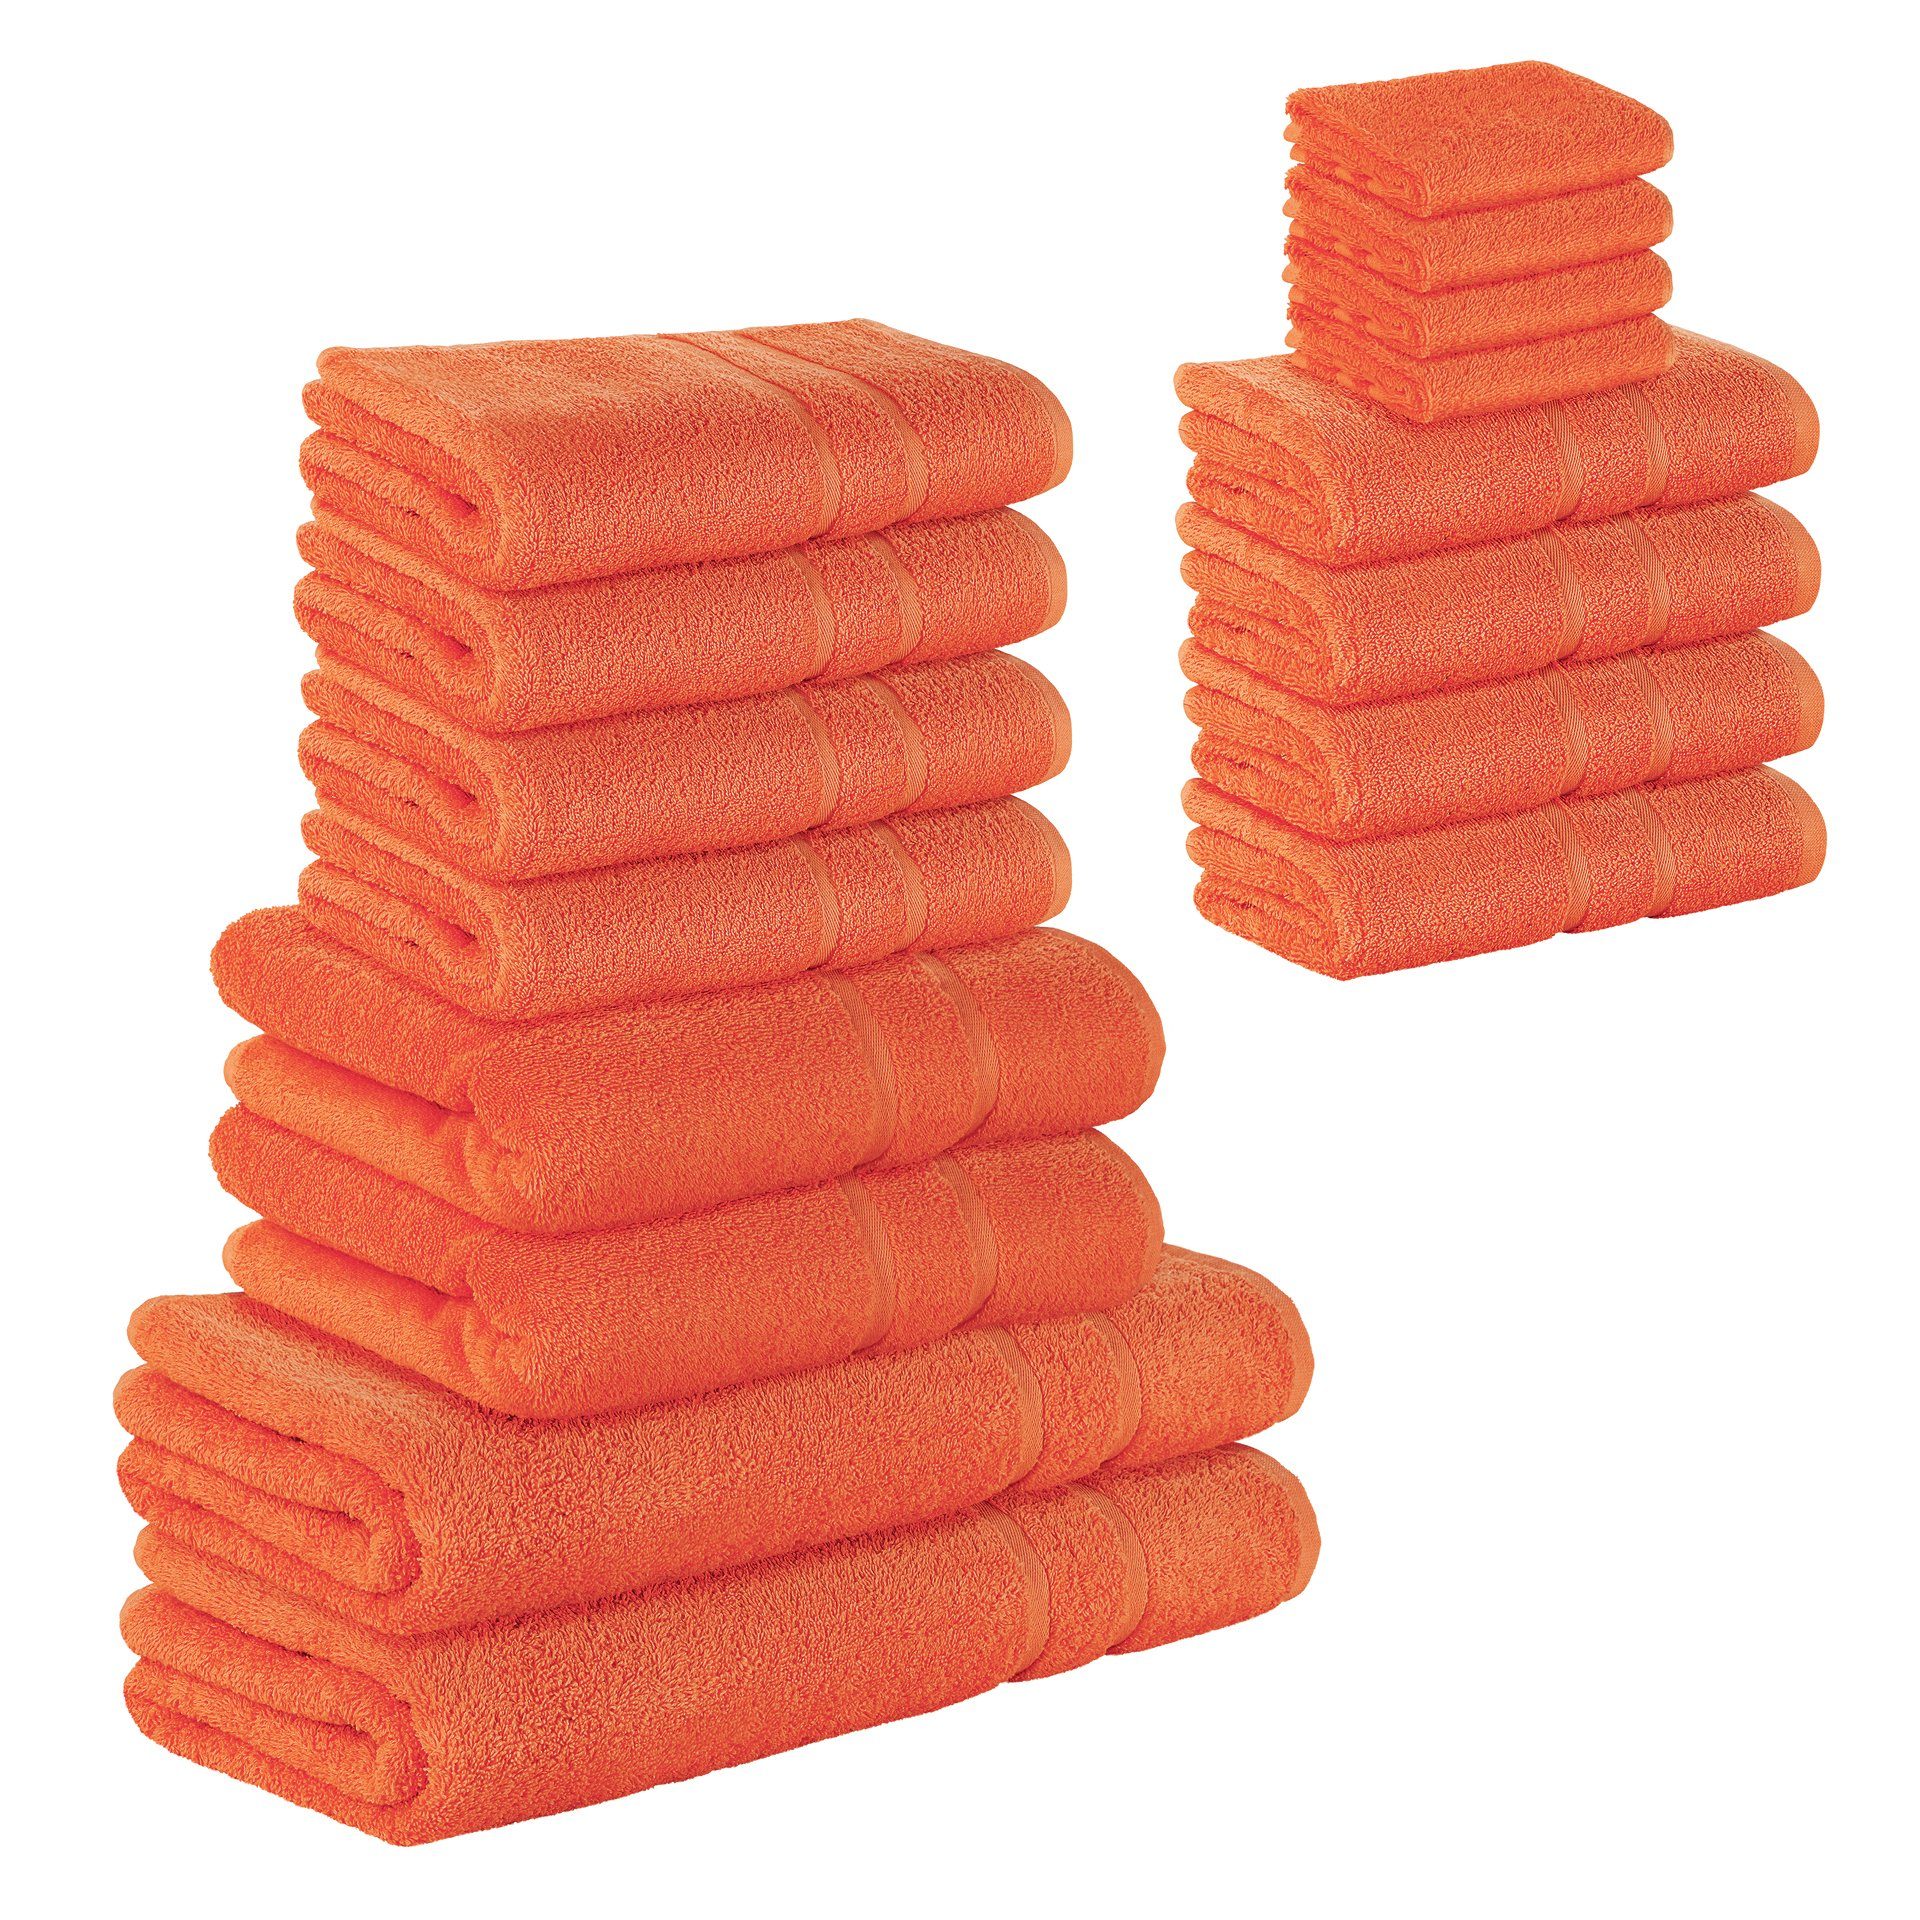 StickandShine Handtuch Set 4x Gästehandtuch 4x Handtücher 4x Duschtücher 2x Badetücher 2x Saunatücher als SET in verschiedenen Farben (16 Teilig) 100% Baumwolle 500 GSM Frottee 16er Handtuch Pack, 100% Baumwolle Orange